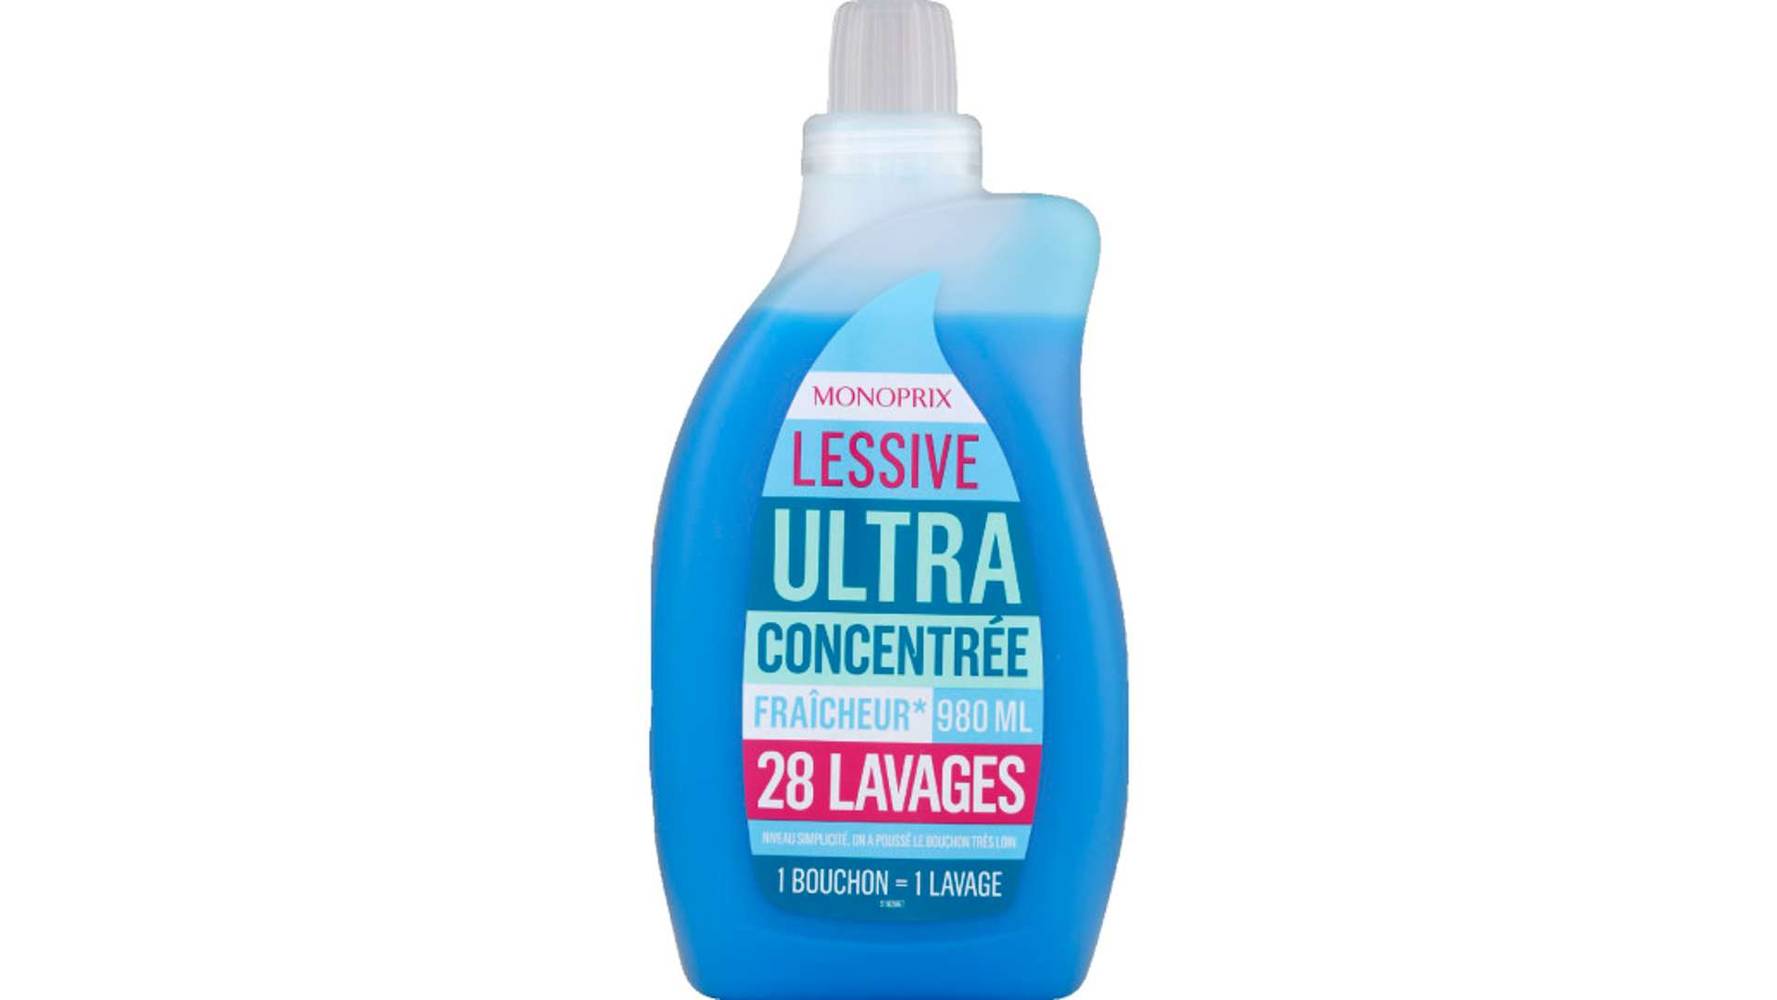 Monoprix Lessive Ultra Concentrée Fraicheur 28 Lavages La bouteille de 980ml